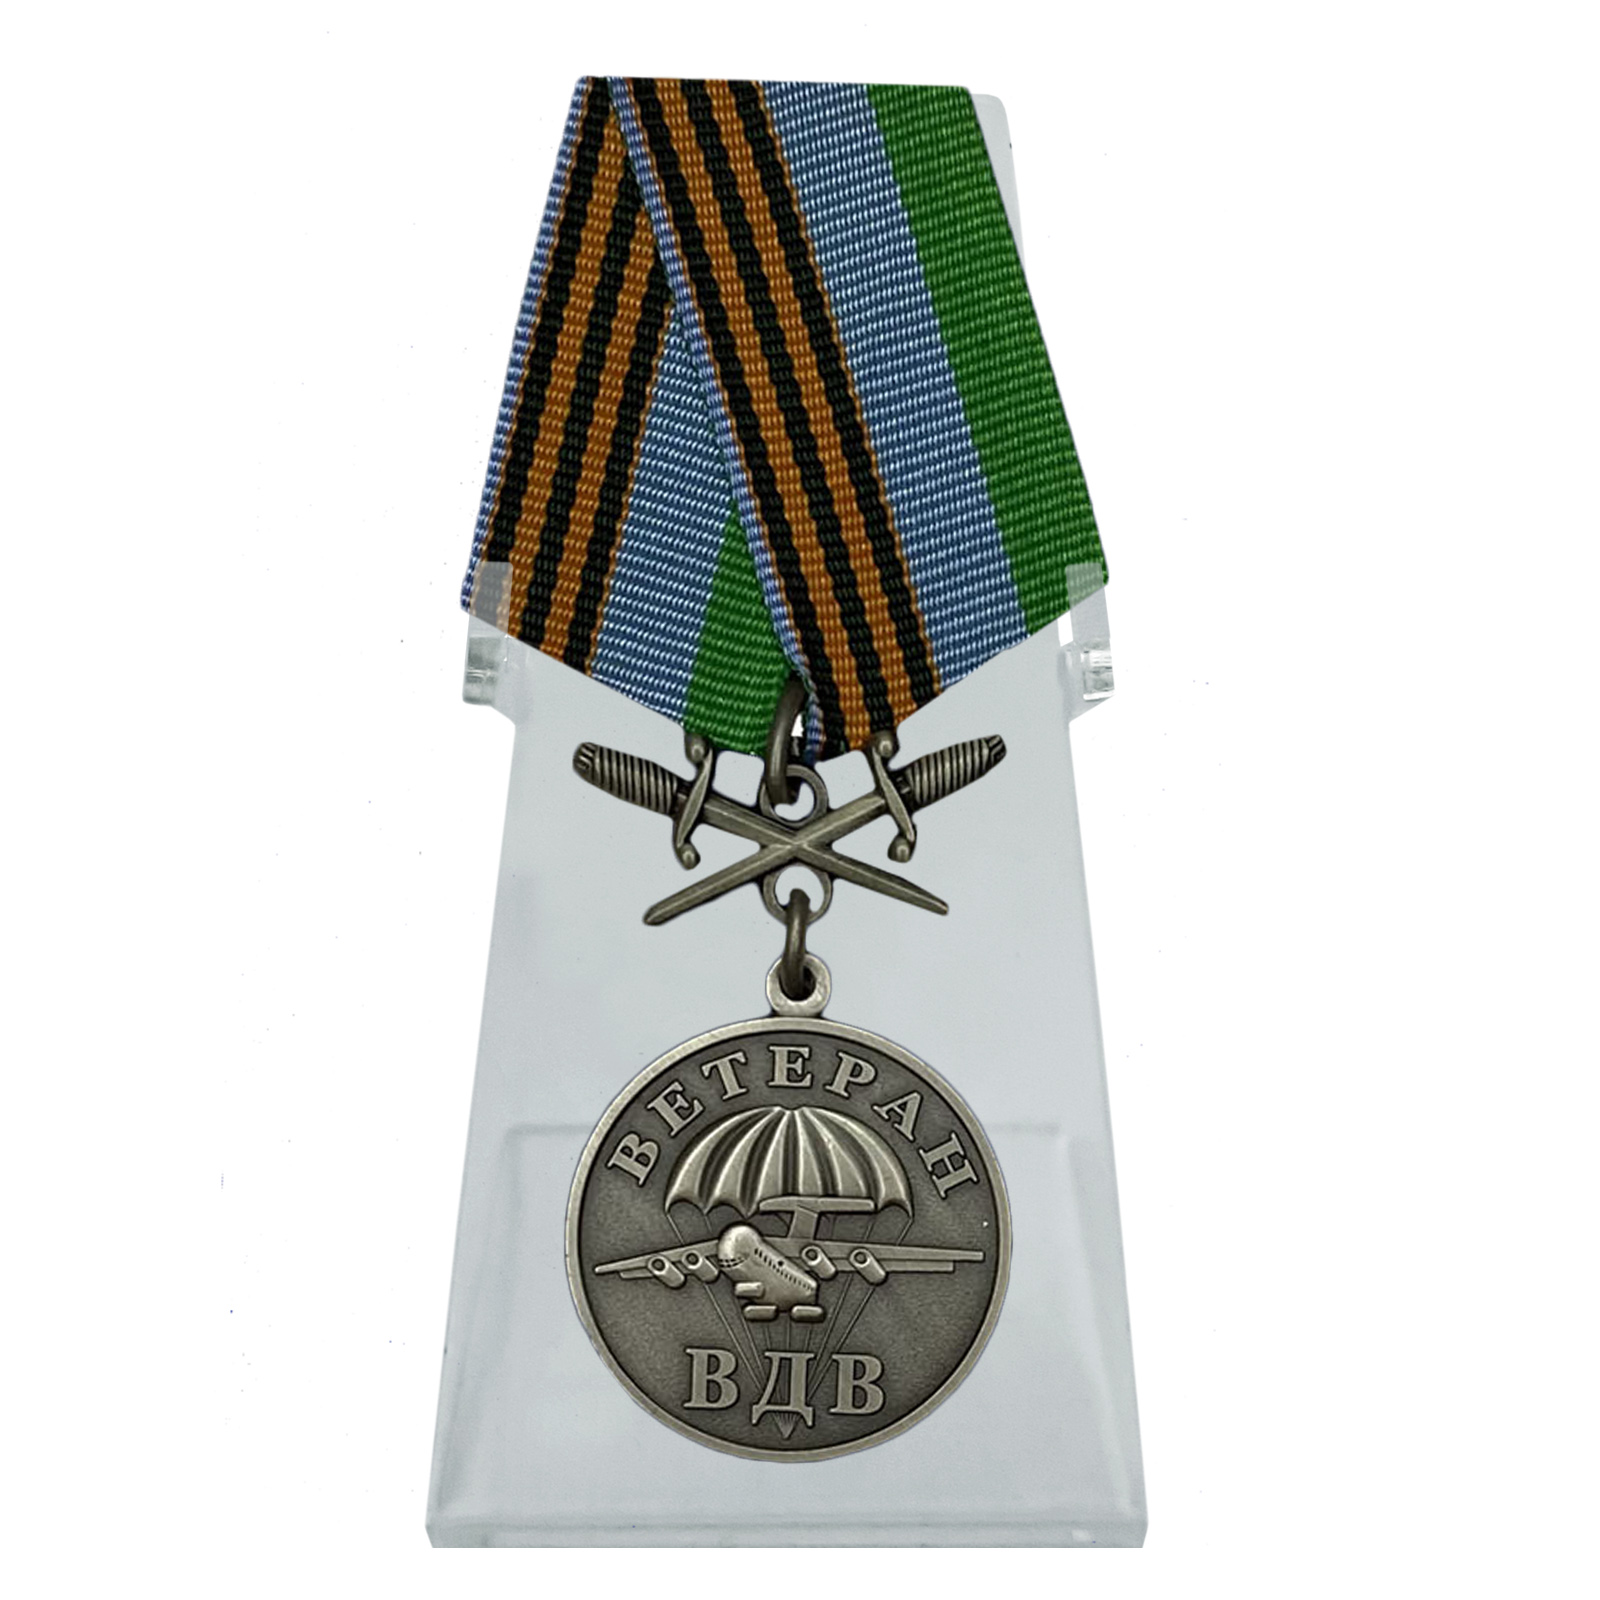 Купить медаль Ветерану ВДВ с мечами на подставке в подарок выгодно